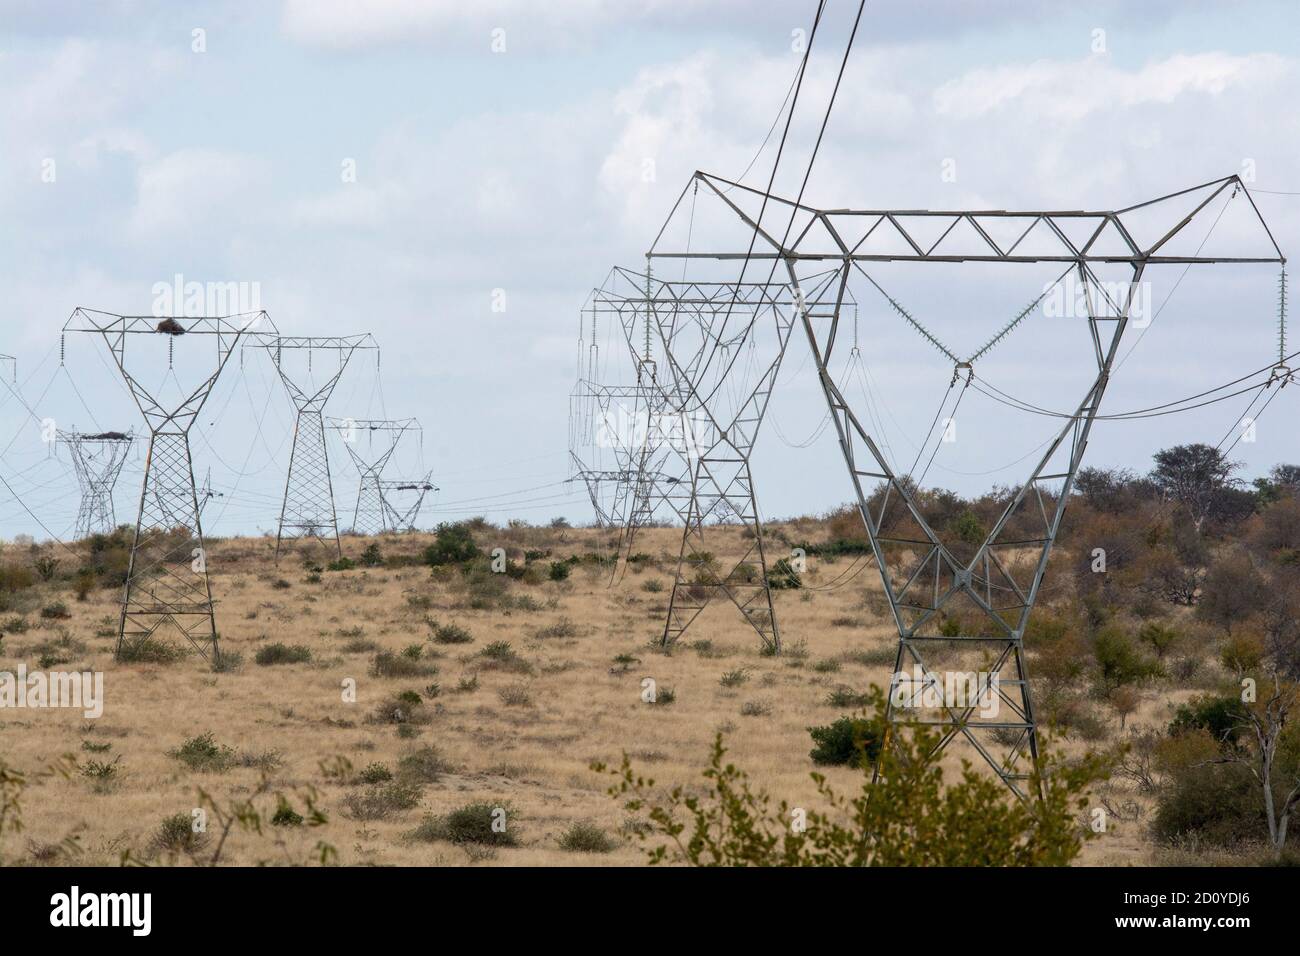 Stromleitungen - Reihen von Pylonen/Masten, die Hochspannungsleitungen über offene Buschveld in Südafrika transportieren. Braunes Veld und blauer Himmel. Stockfoto